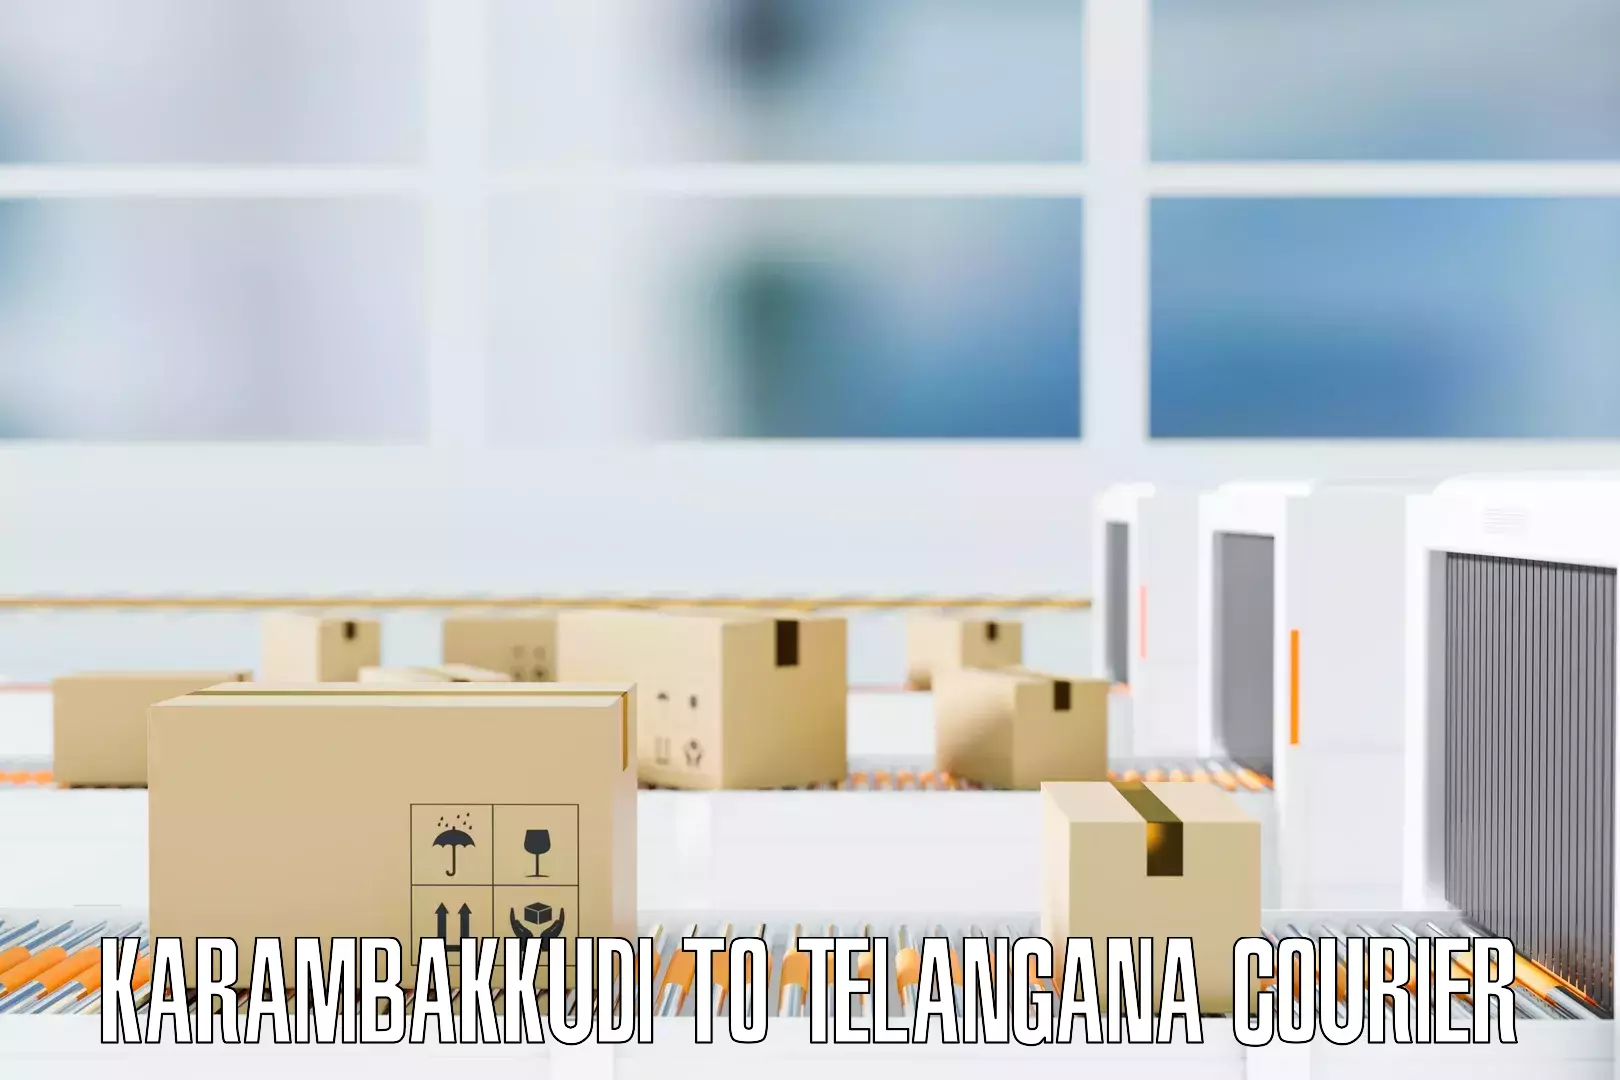 Stress-free moving Karambakkudi to Telangana